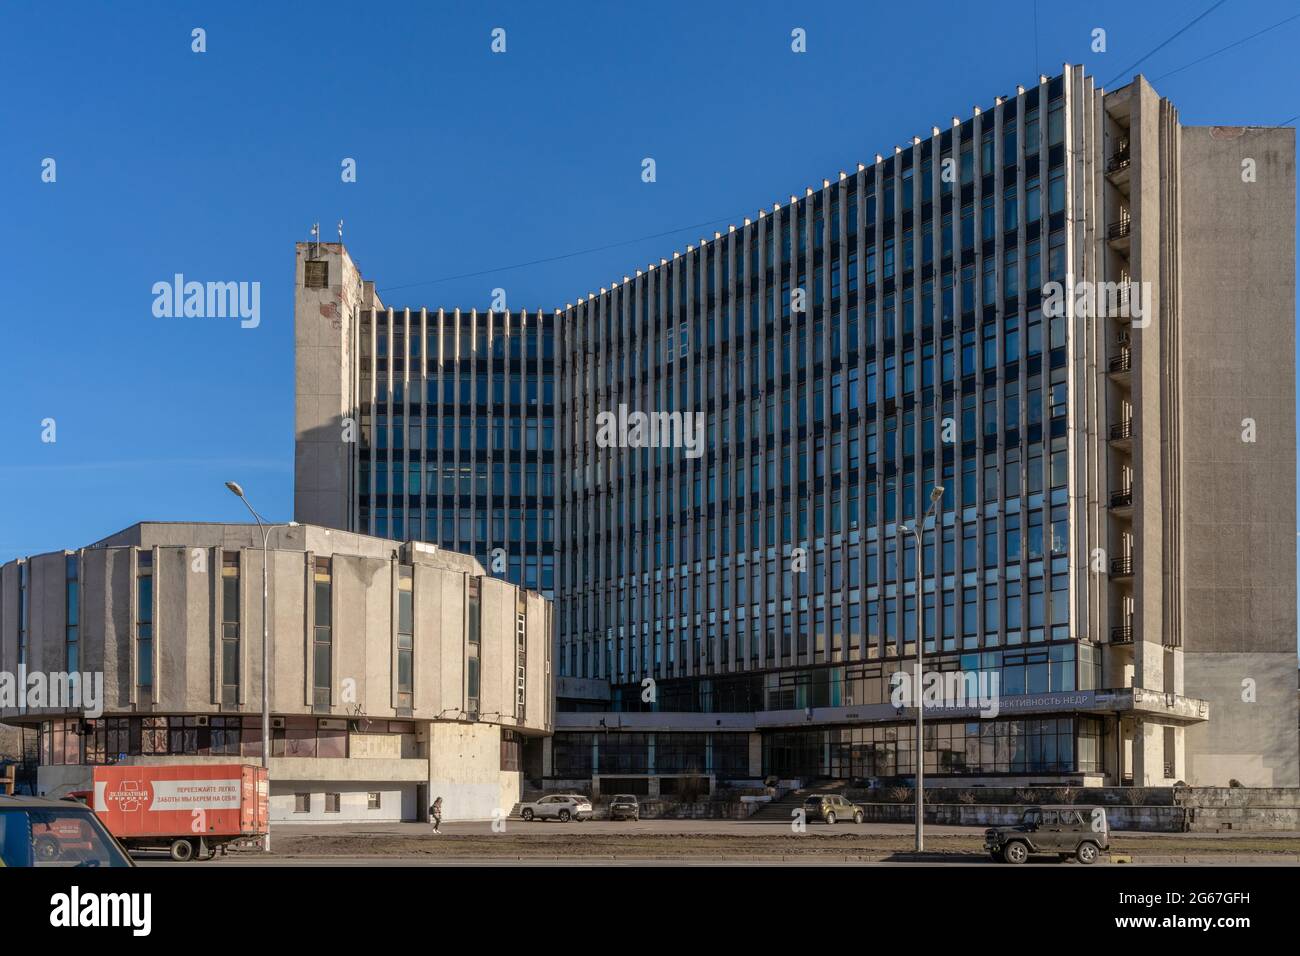 Institut de chimie silicate, modernisme socialiste, éléments constructivistes, Saint-Pétersbourg, Russie Banque D'Images